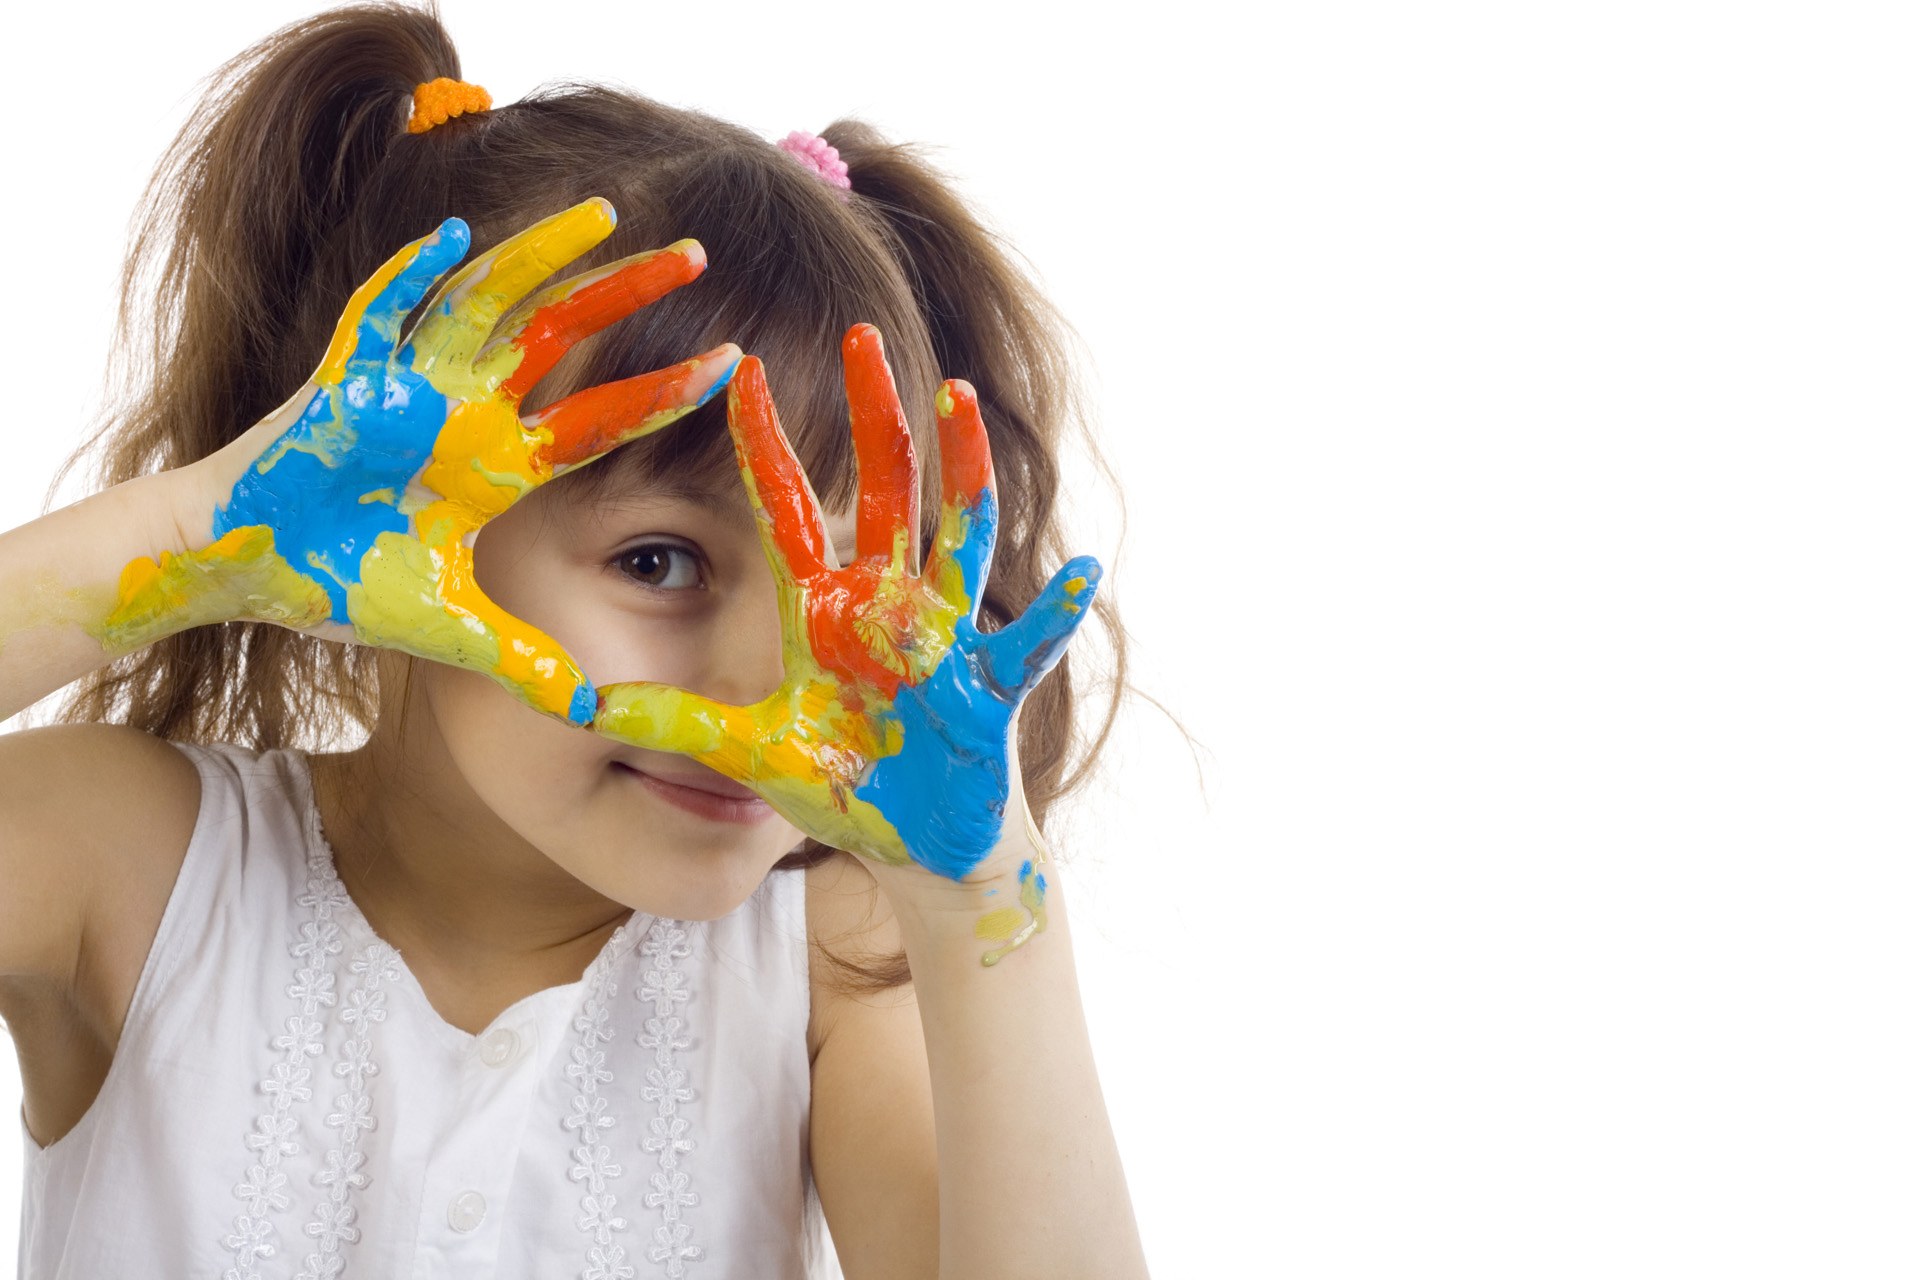 Mùi sơn có thể ảnh hưởng đến hệ thần kinh và trí não của trẻ nhỏ